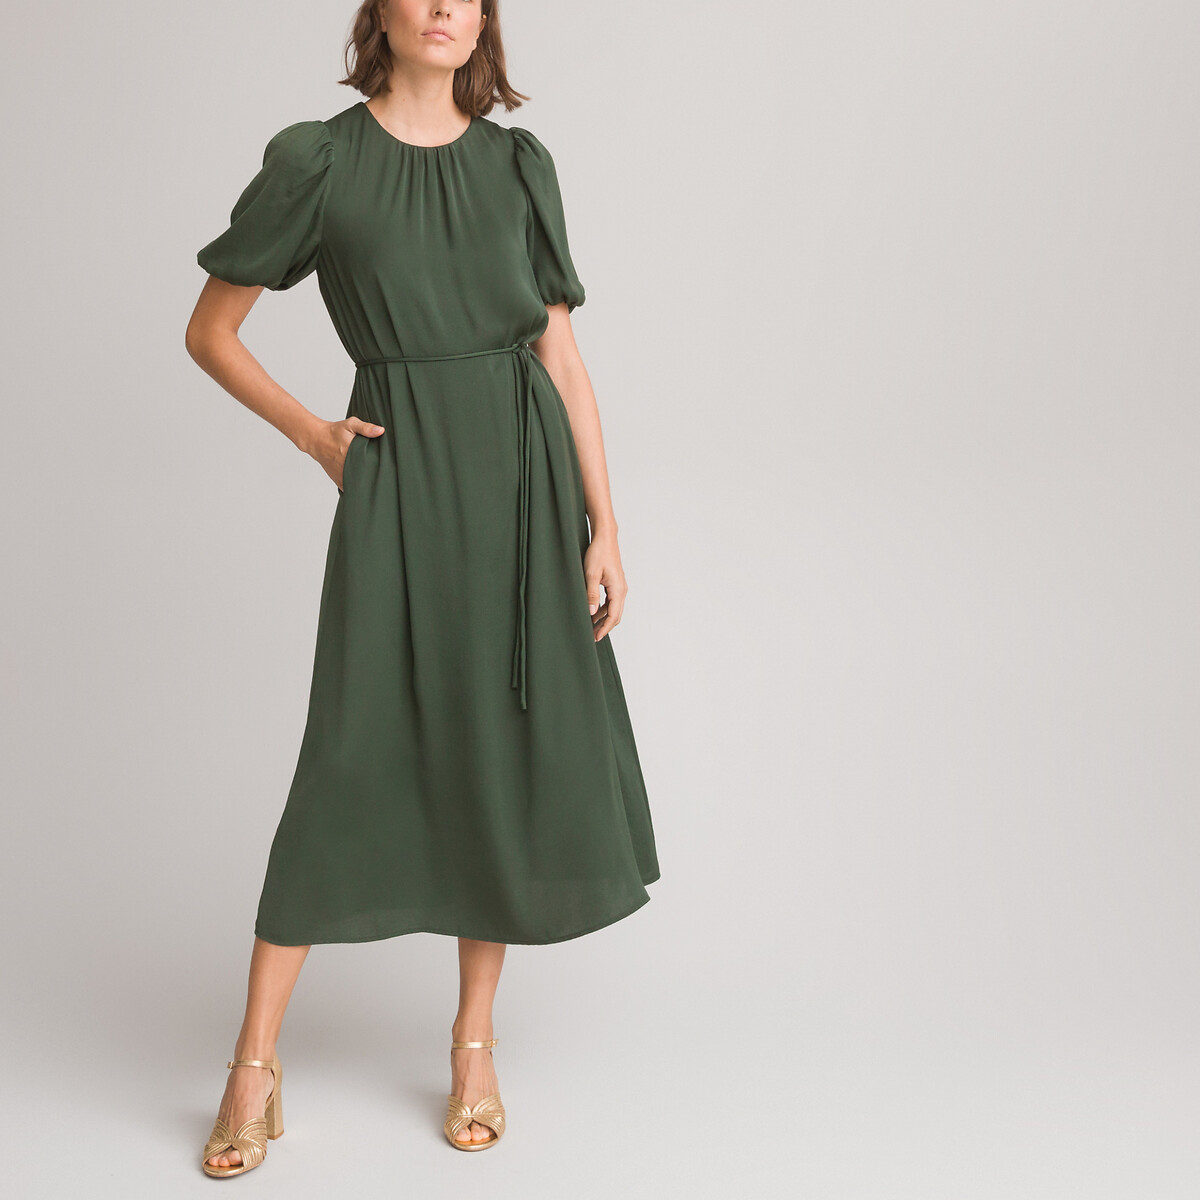 платье длинное расклешенное с круглым вырезом и короткими рукавами с напуском 42 зеленый